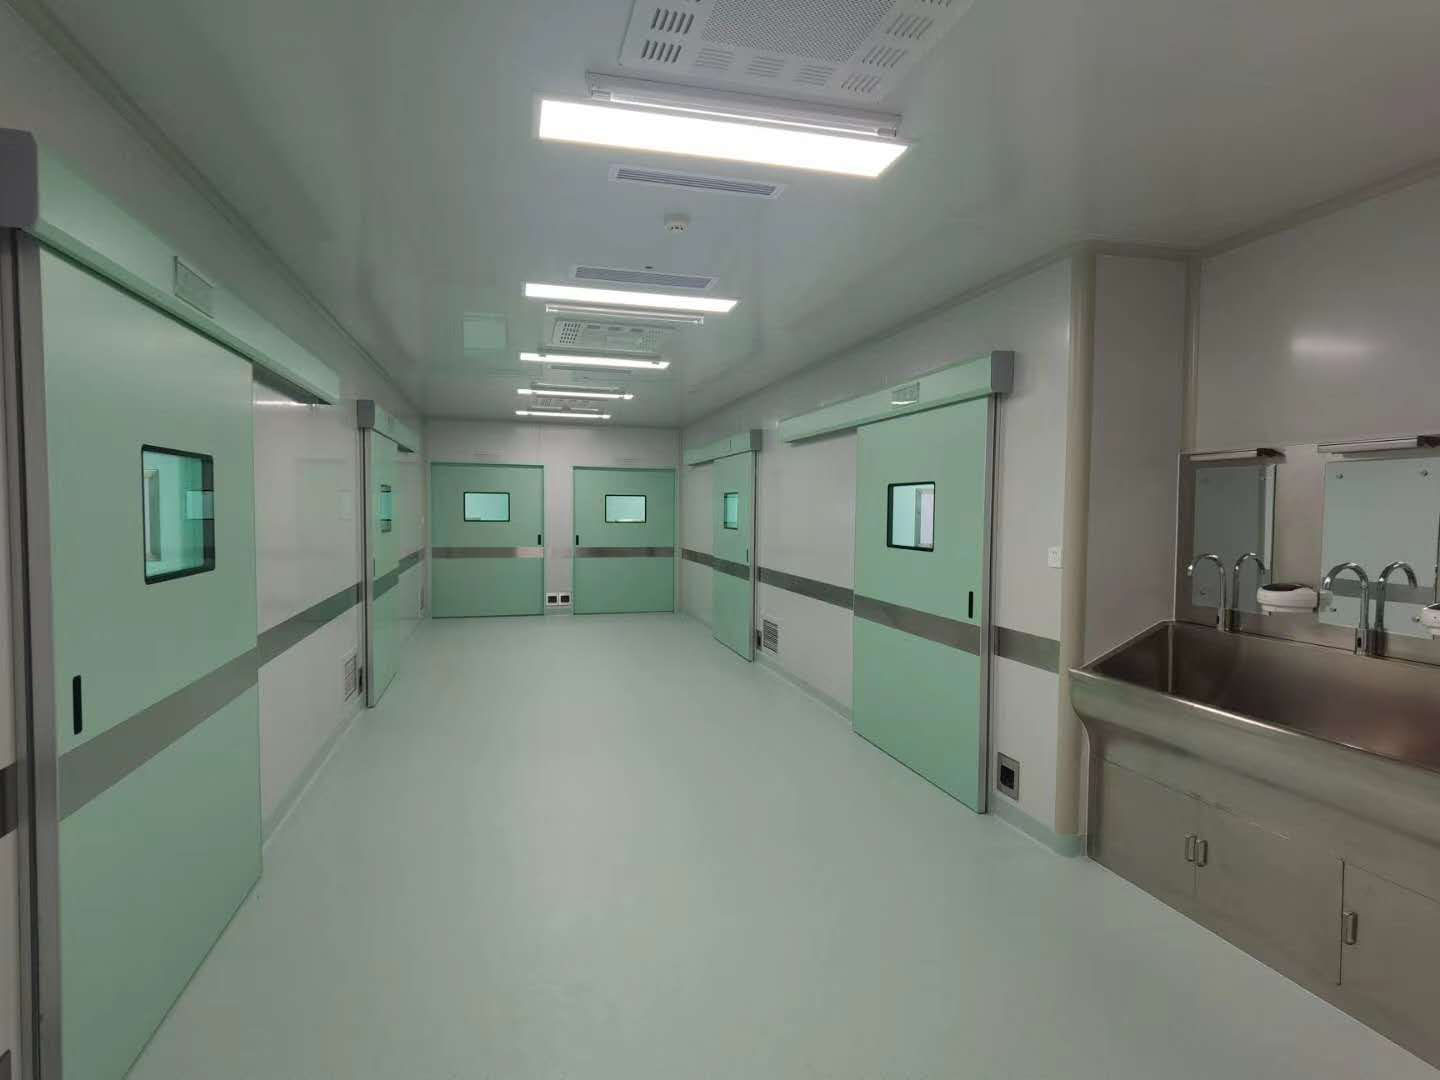 Šenjango šeštoji liaudies ligoninė